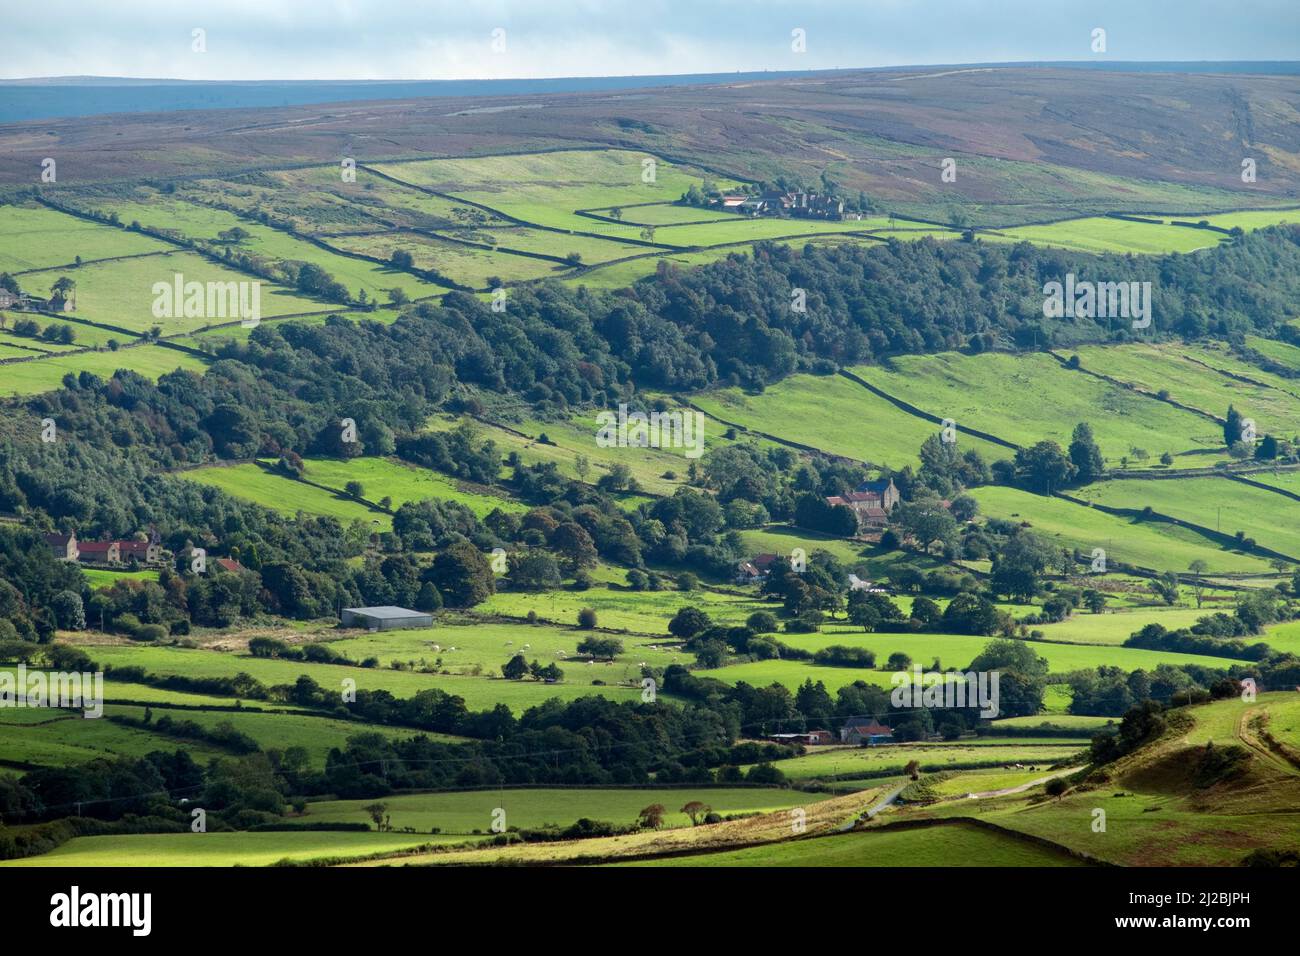 Vista de la campiña con edificios agrícolas, pasto y altos páramos en distancia, North East Yorkshire, Septemebr Foto de stock